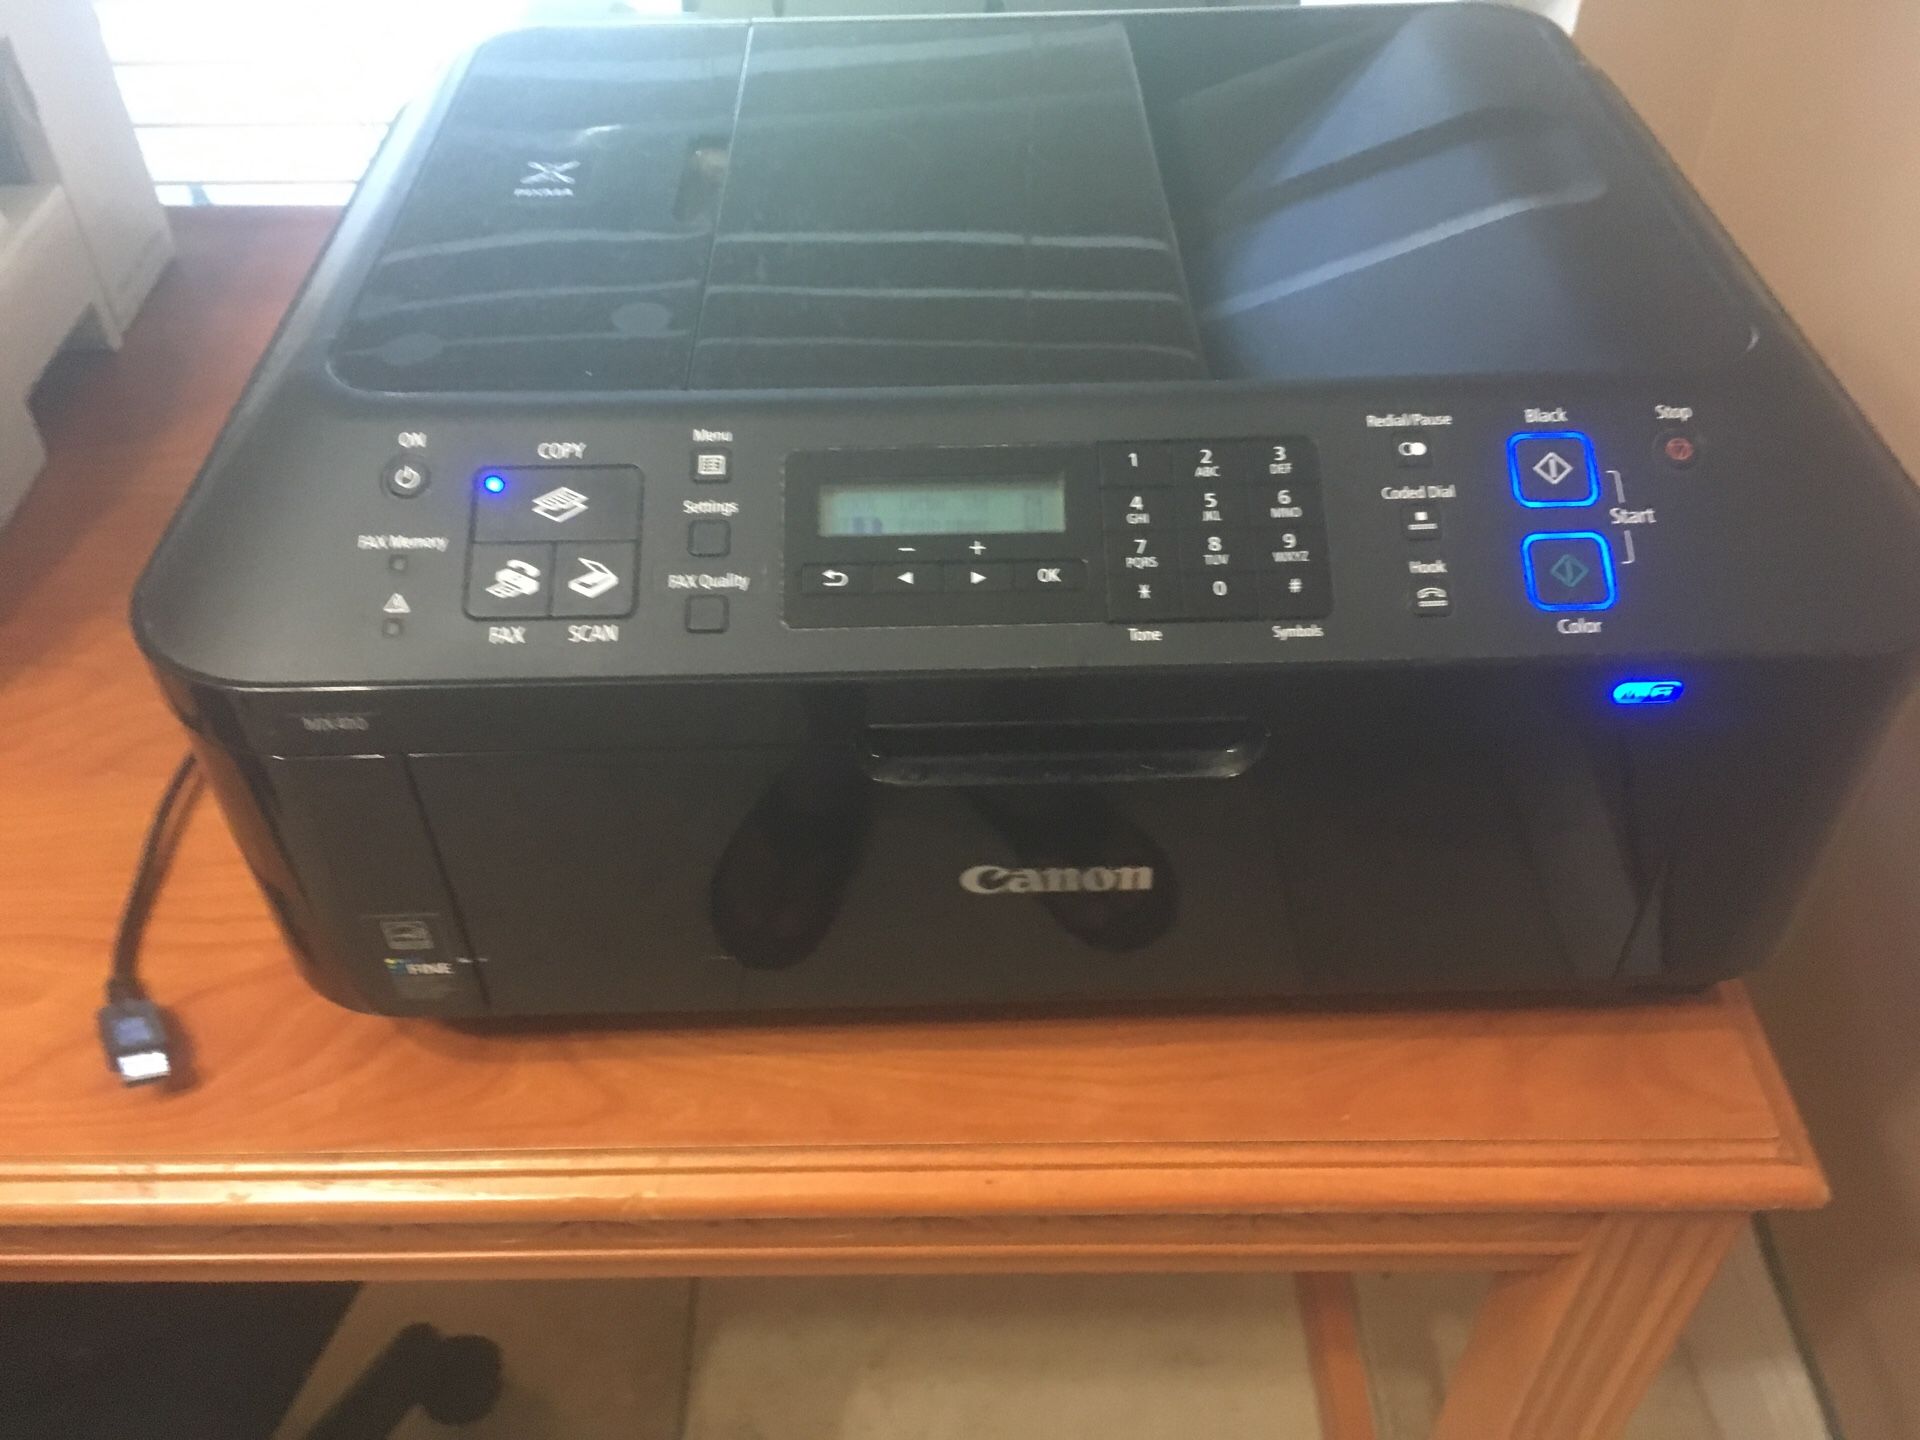 Canon Pixma Mx410 WiFi Copy Scan fax